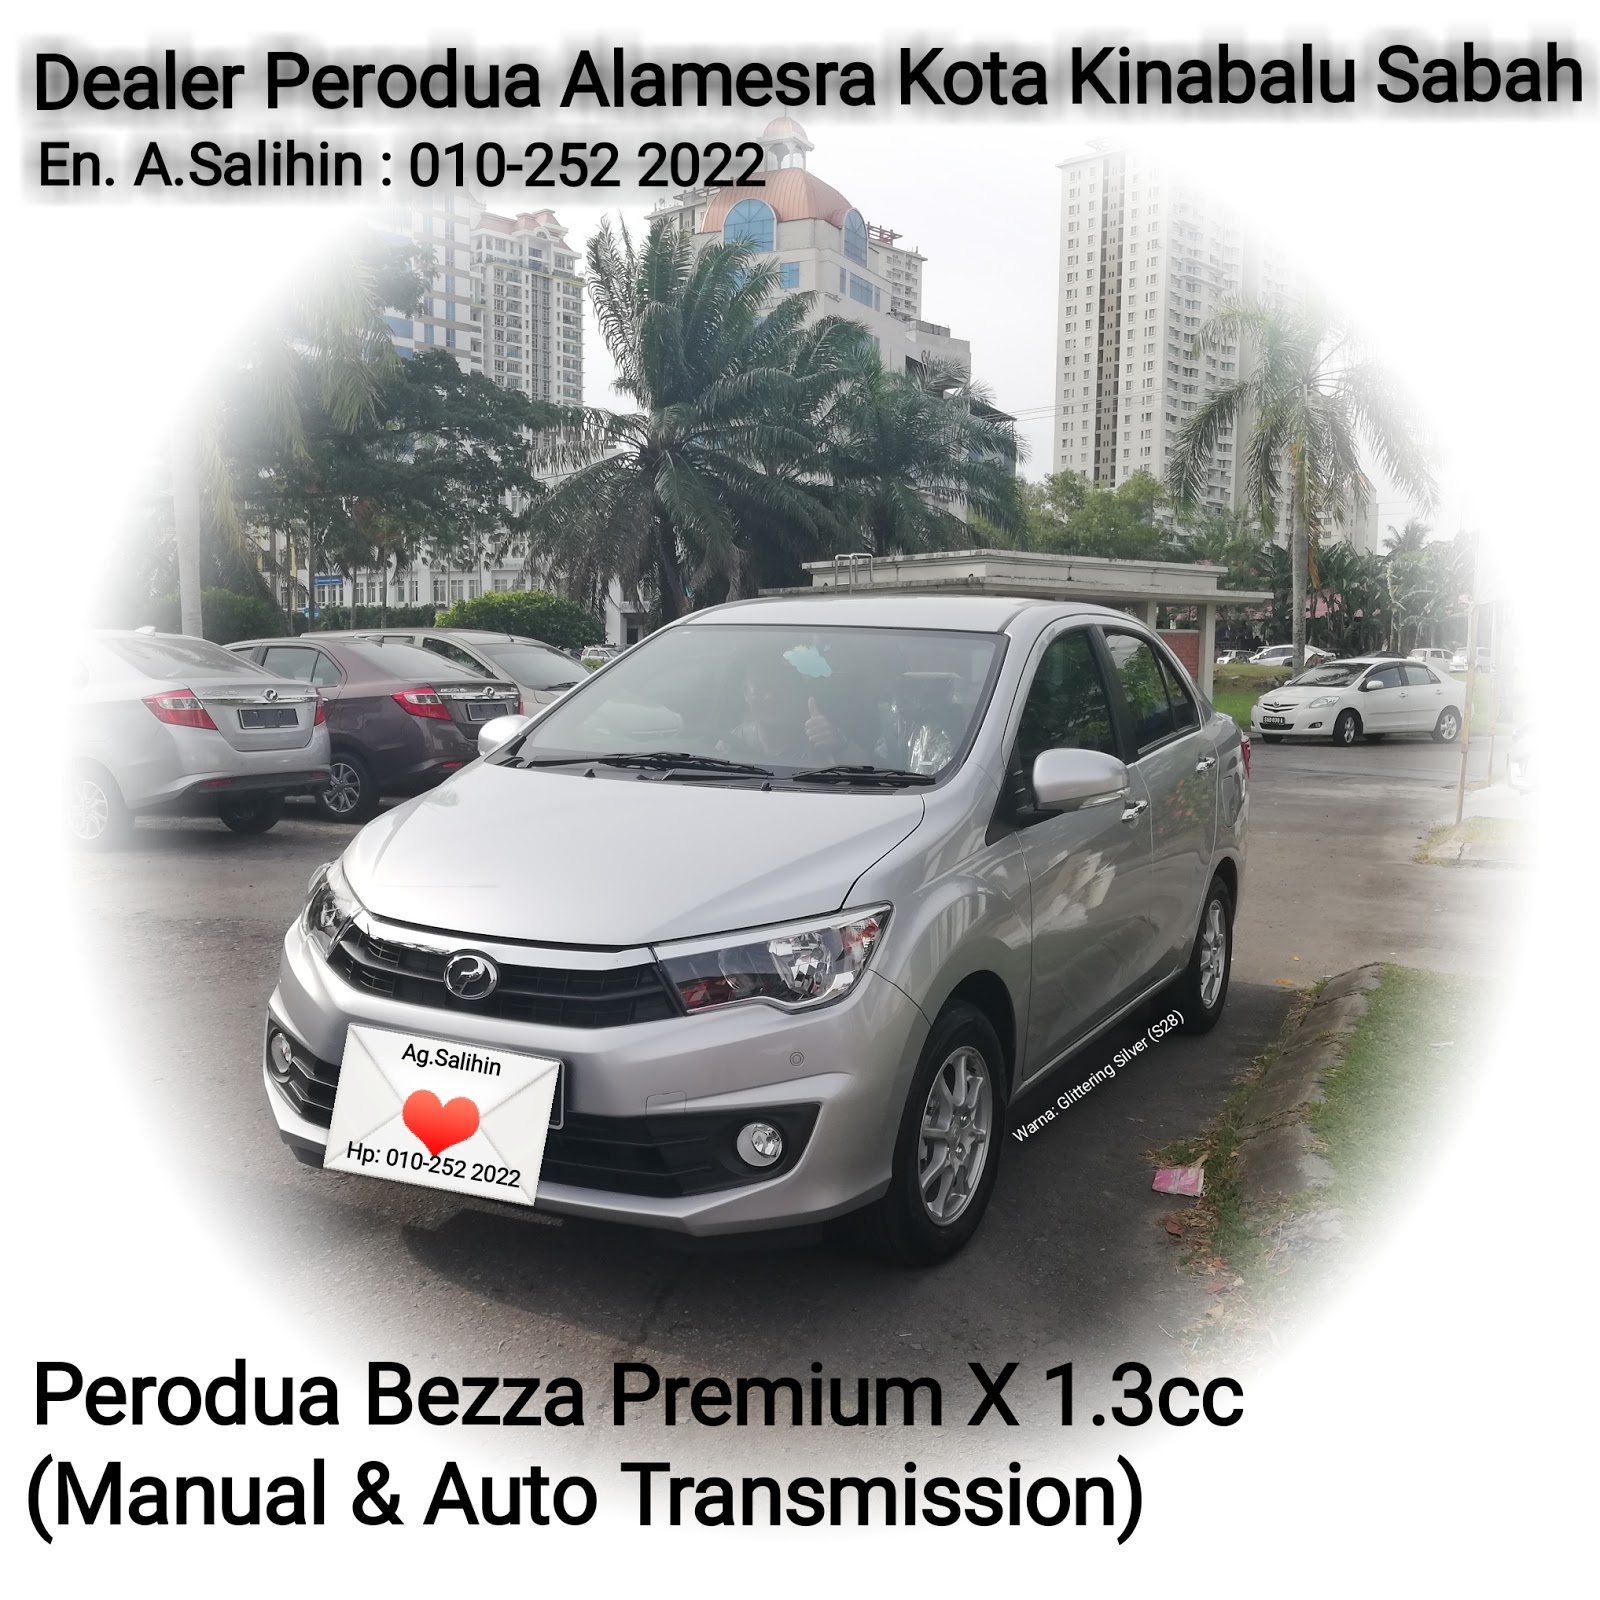 Dealer Perodua Alamesra Kota Kinabalu Sabah Sales: July 2012